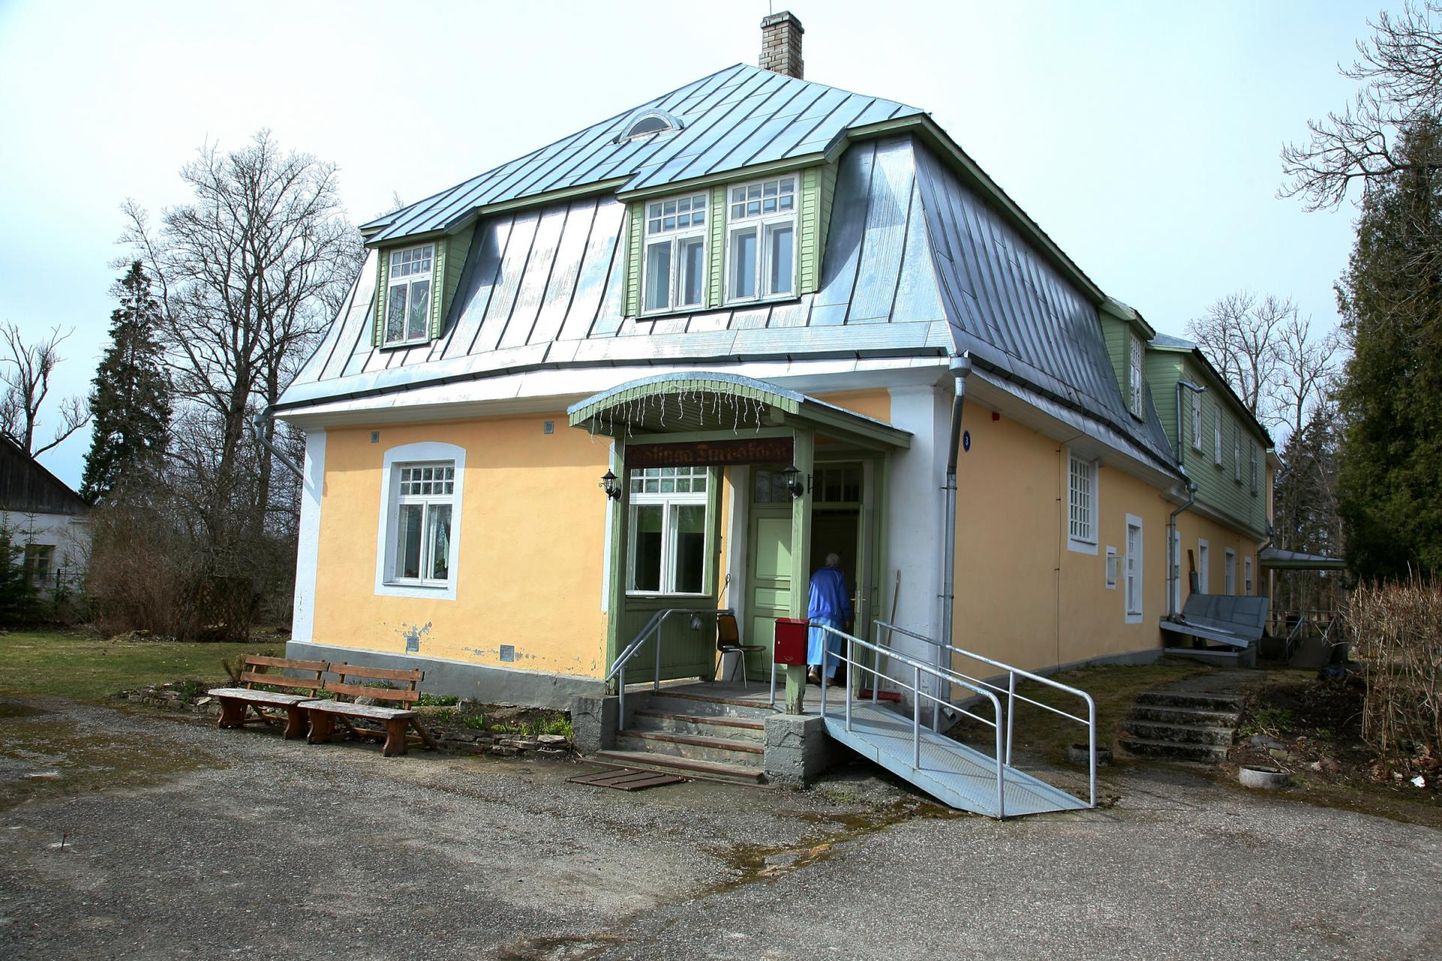 Halinga turvakodu pakub üldhooldusteenust 125 kliendile Põhja-Pärnumaa vallas kolmes hoones.